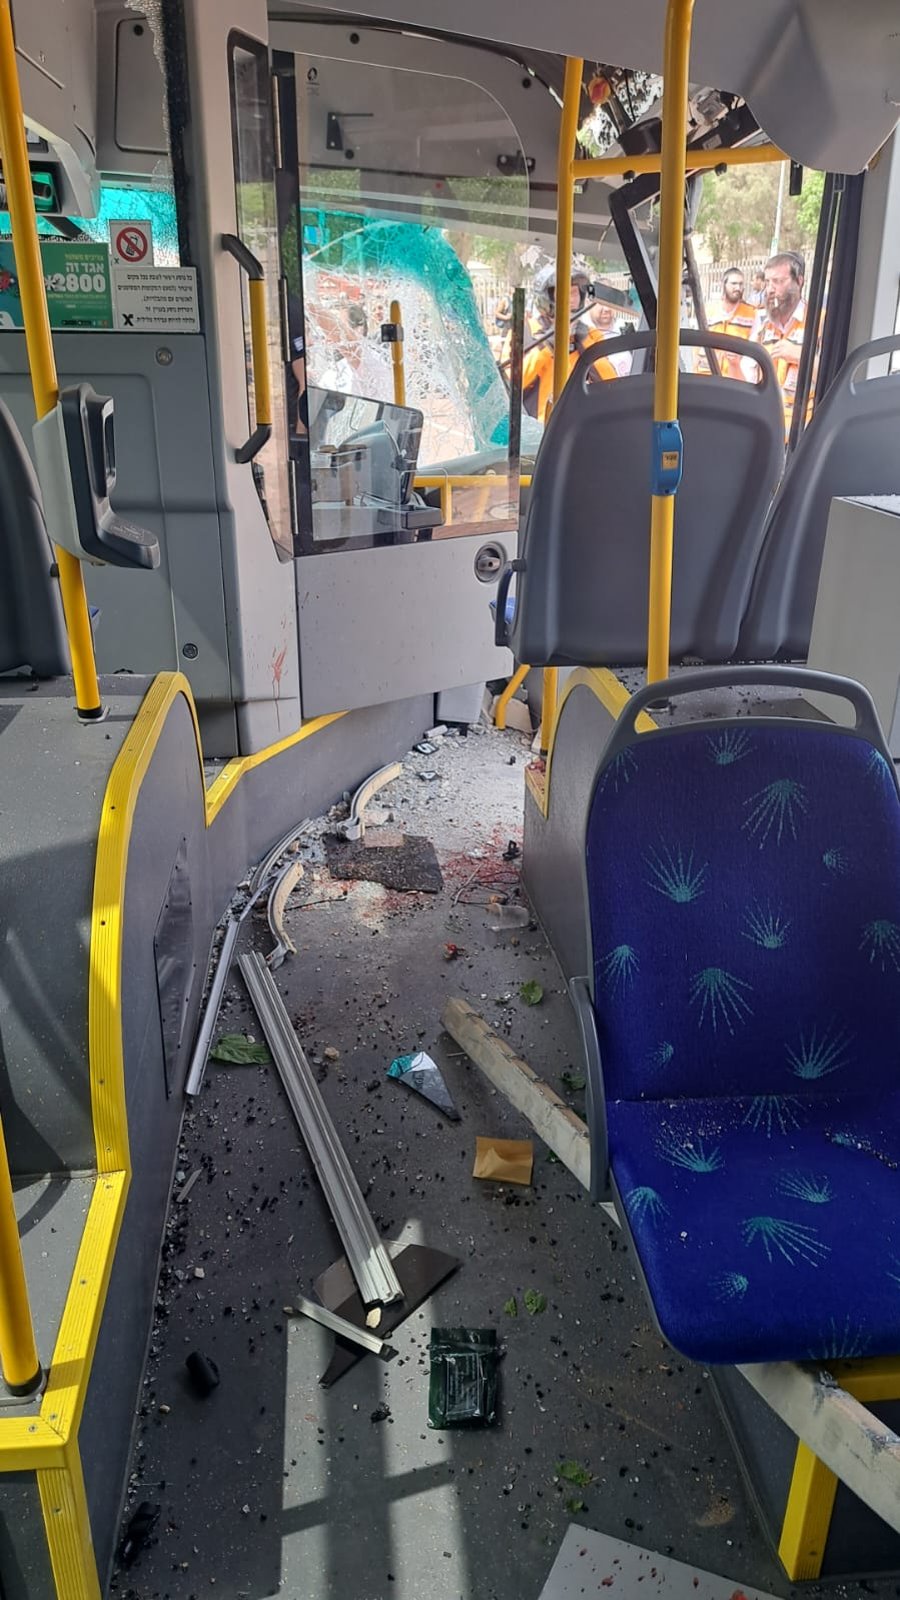 אוטובוס התנגש בחומה בחיפה ופגע ברכבים; 13 נפצעו